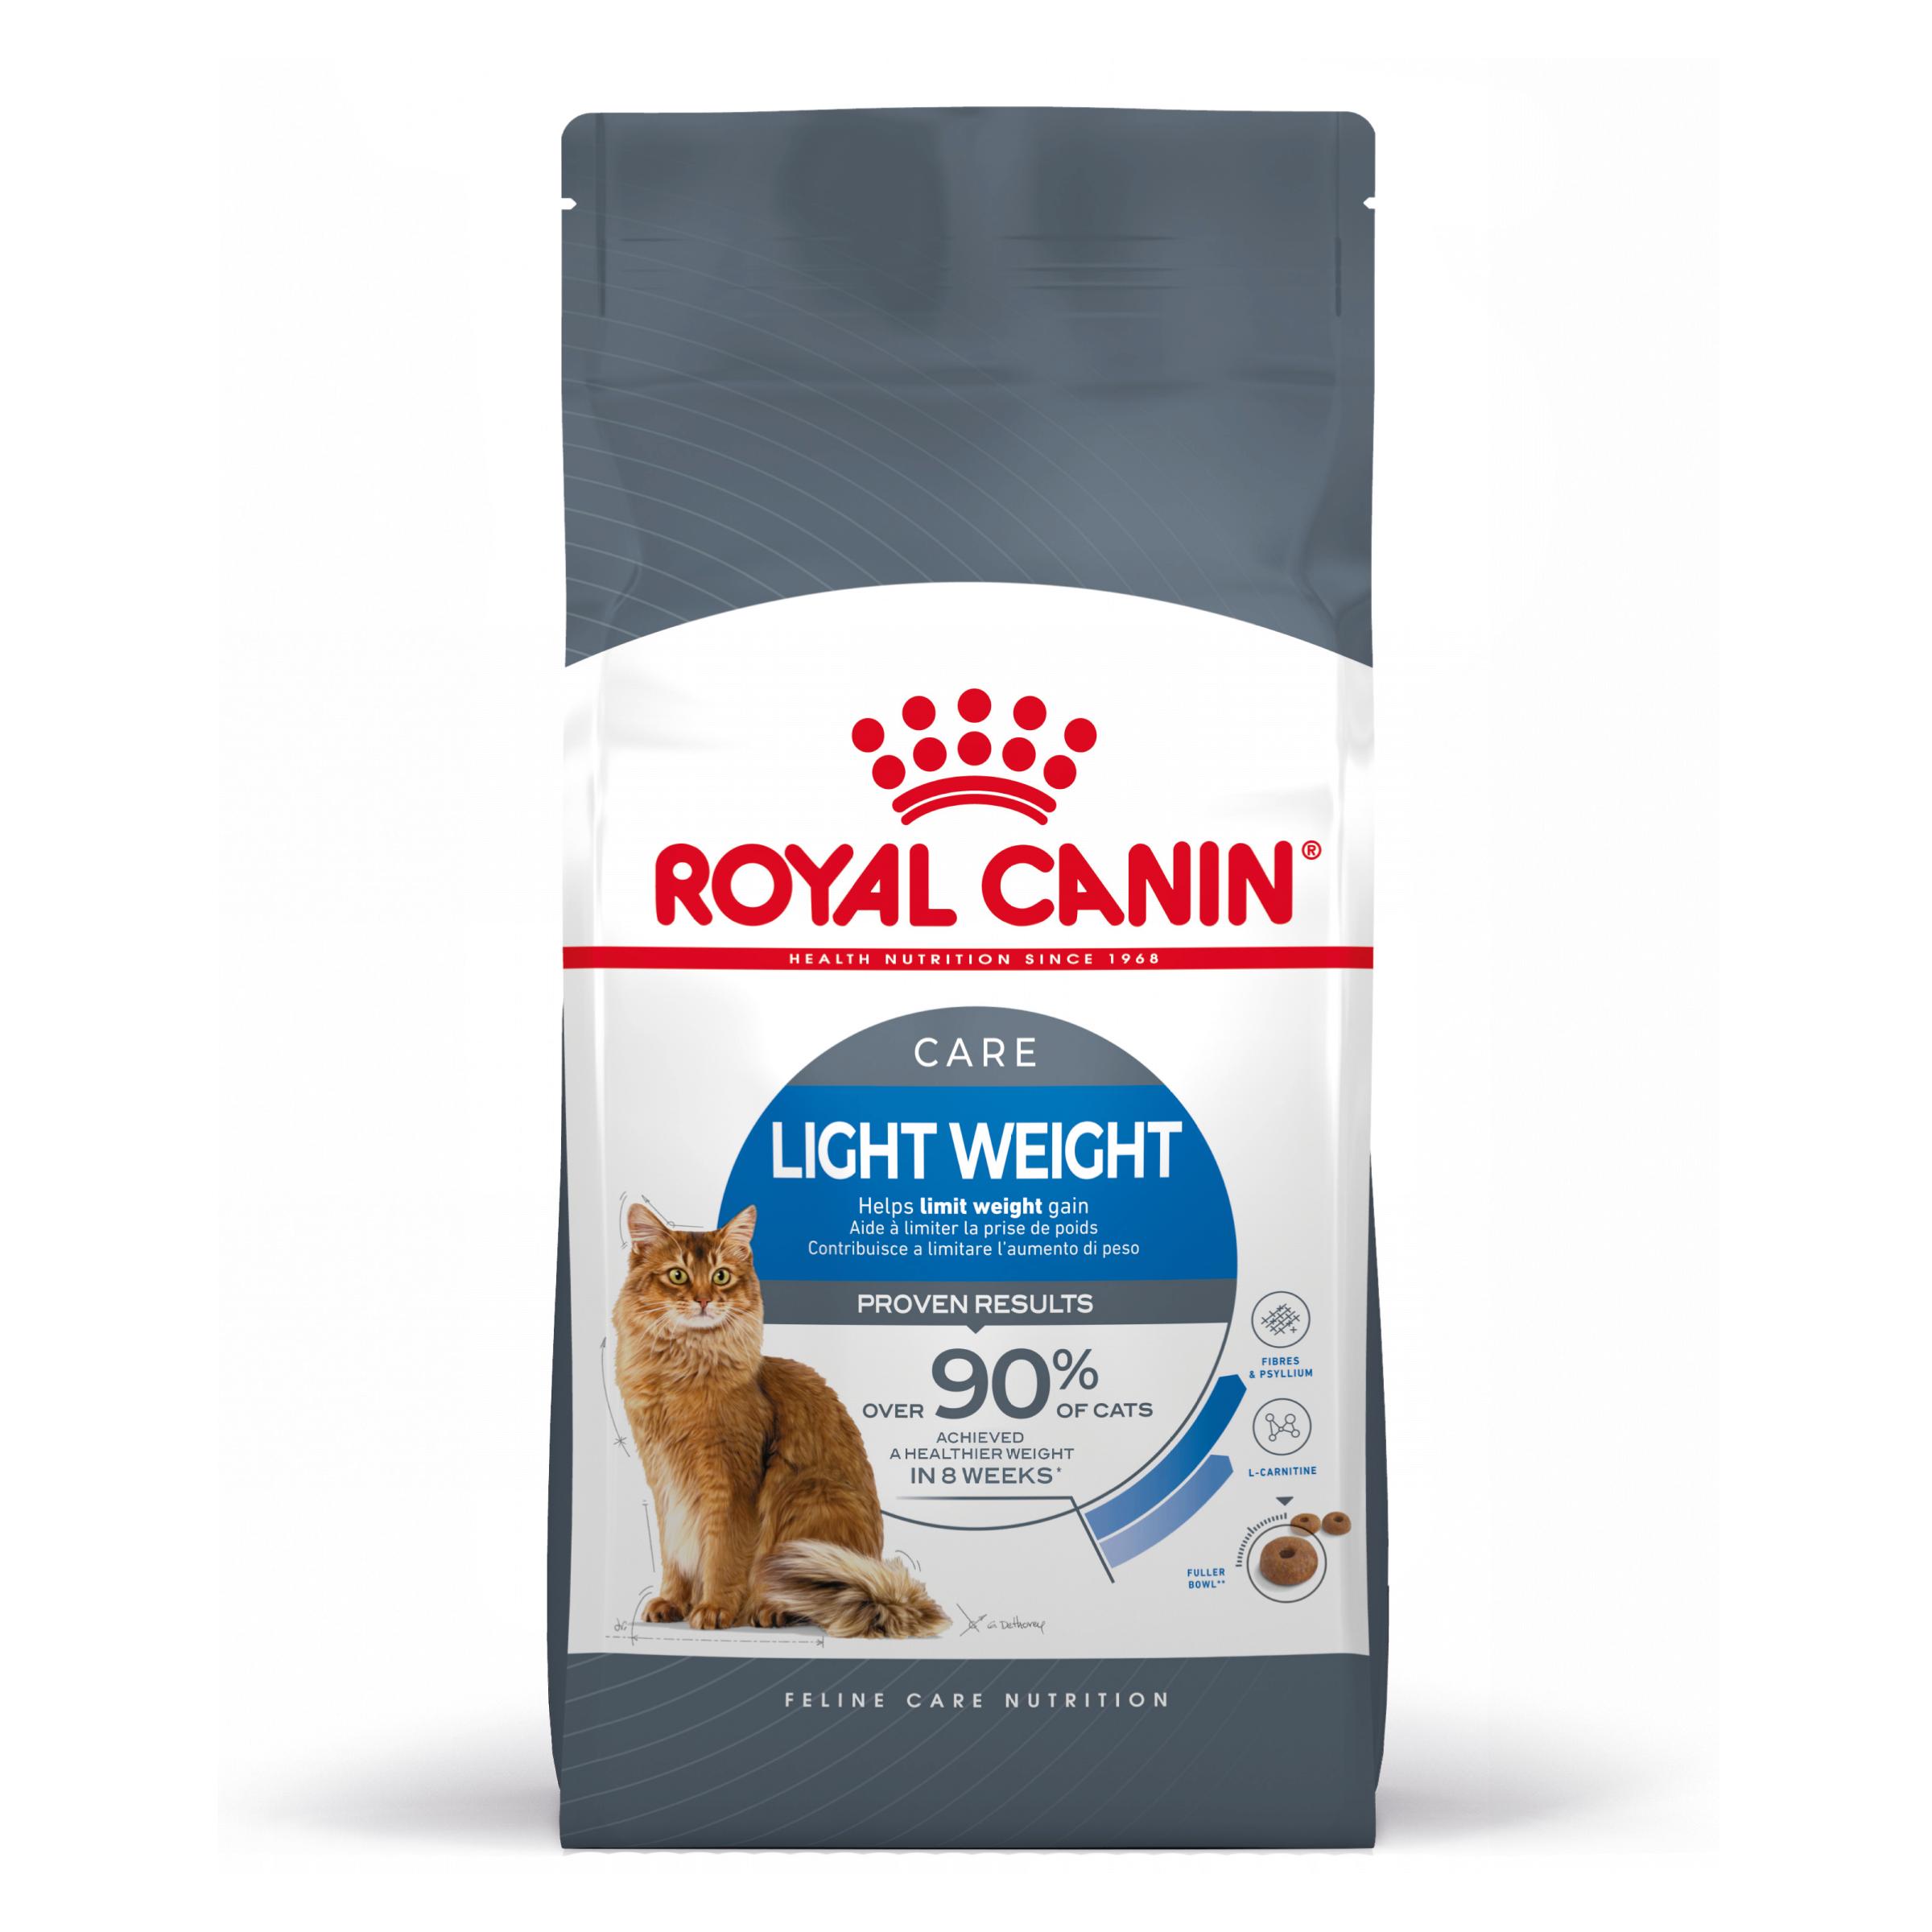 Royal Canin Light Weight Care - Aliment pour chats adultes. - Recommandé pour aider à limiter la prise de poids - 8kg